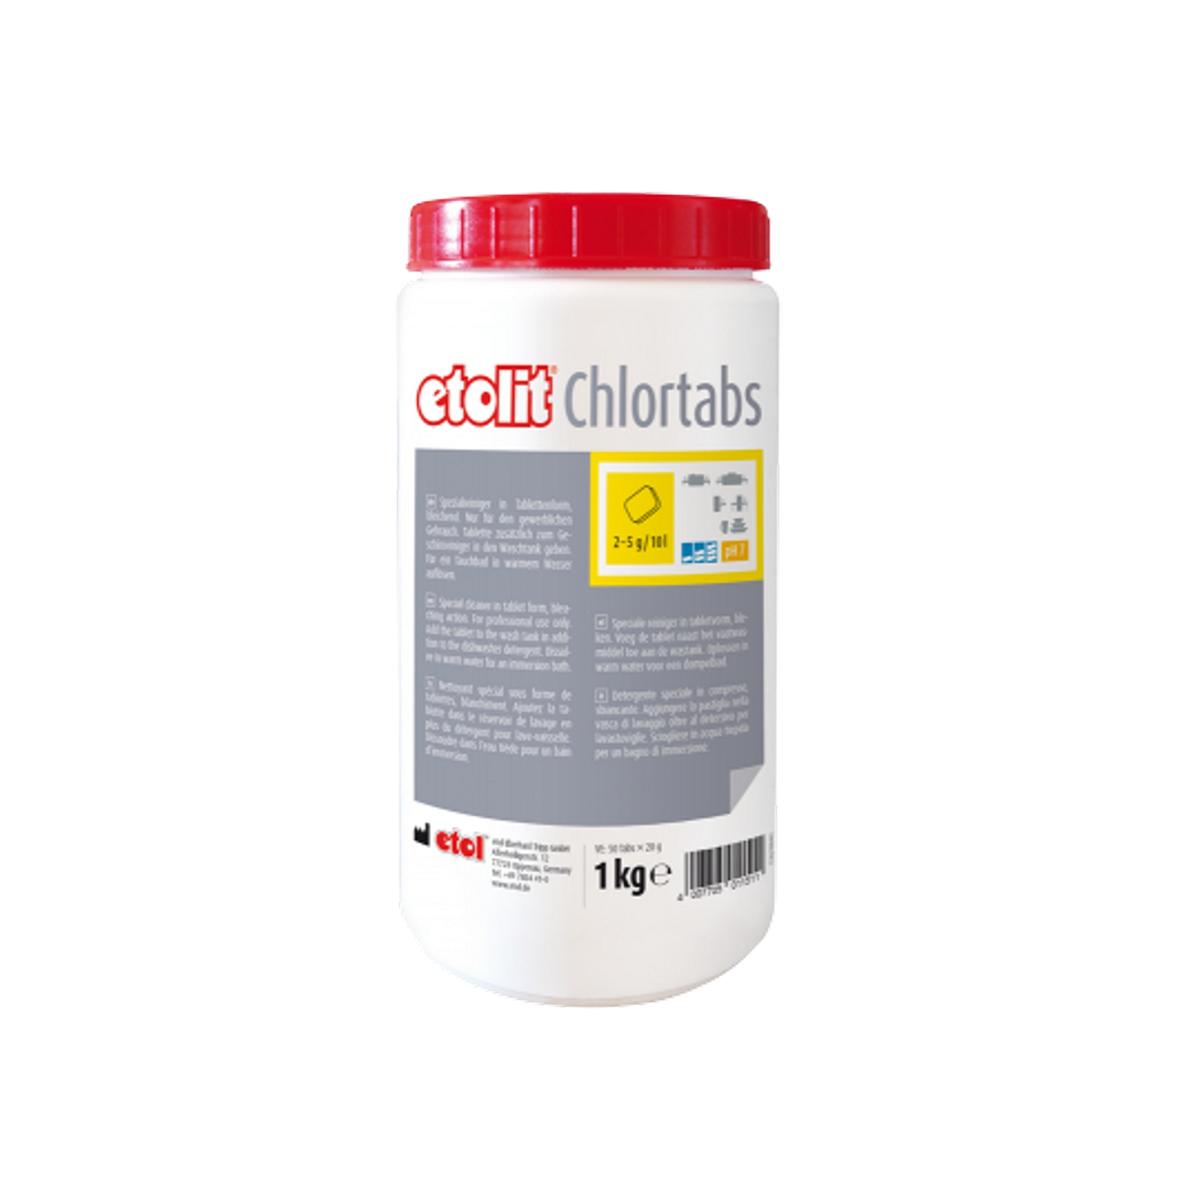 Etolit Chlortabs | 1 kg <br>Spezialreiniger in Tablettenform